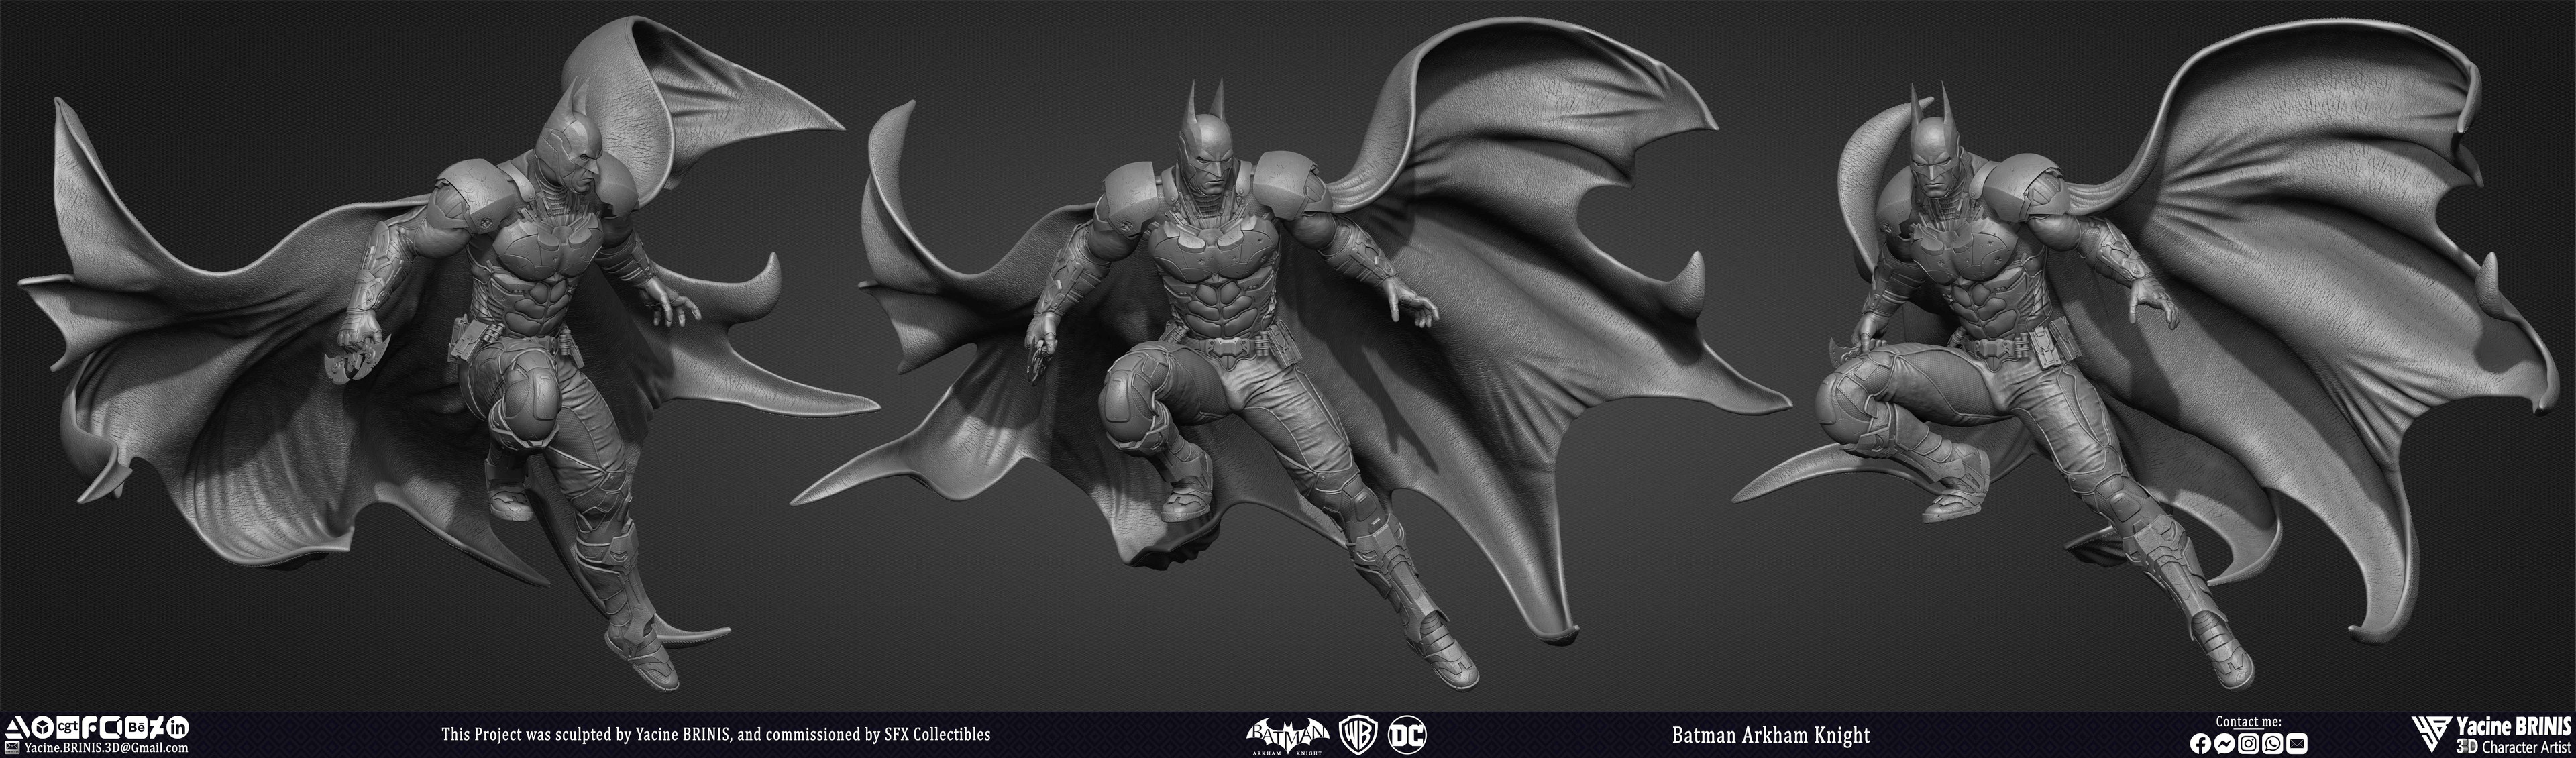 Batman Arkham Knight Vol 03 Sculpted by Yacine BRINIS 004